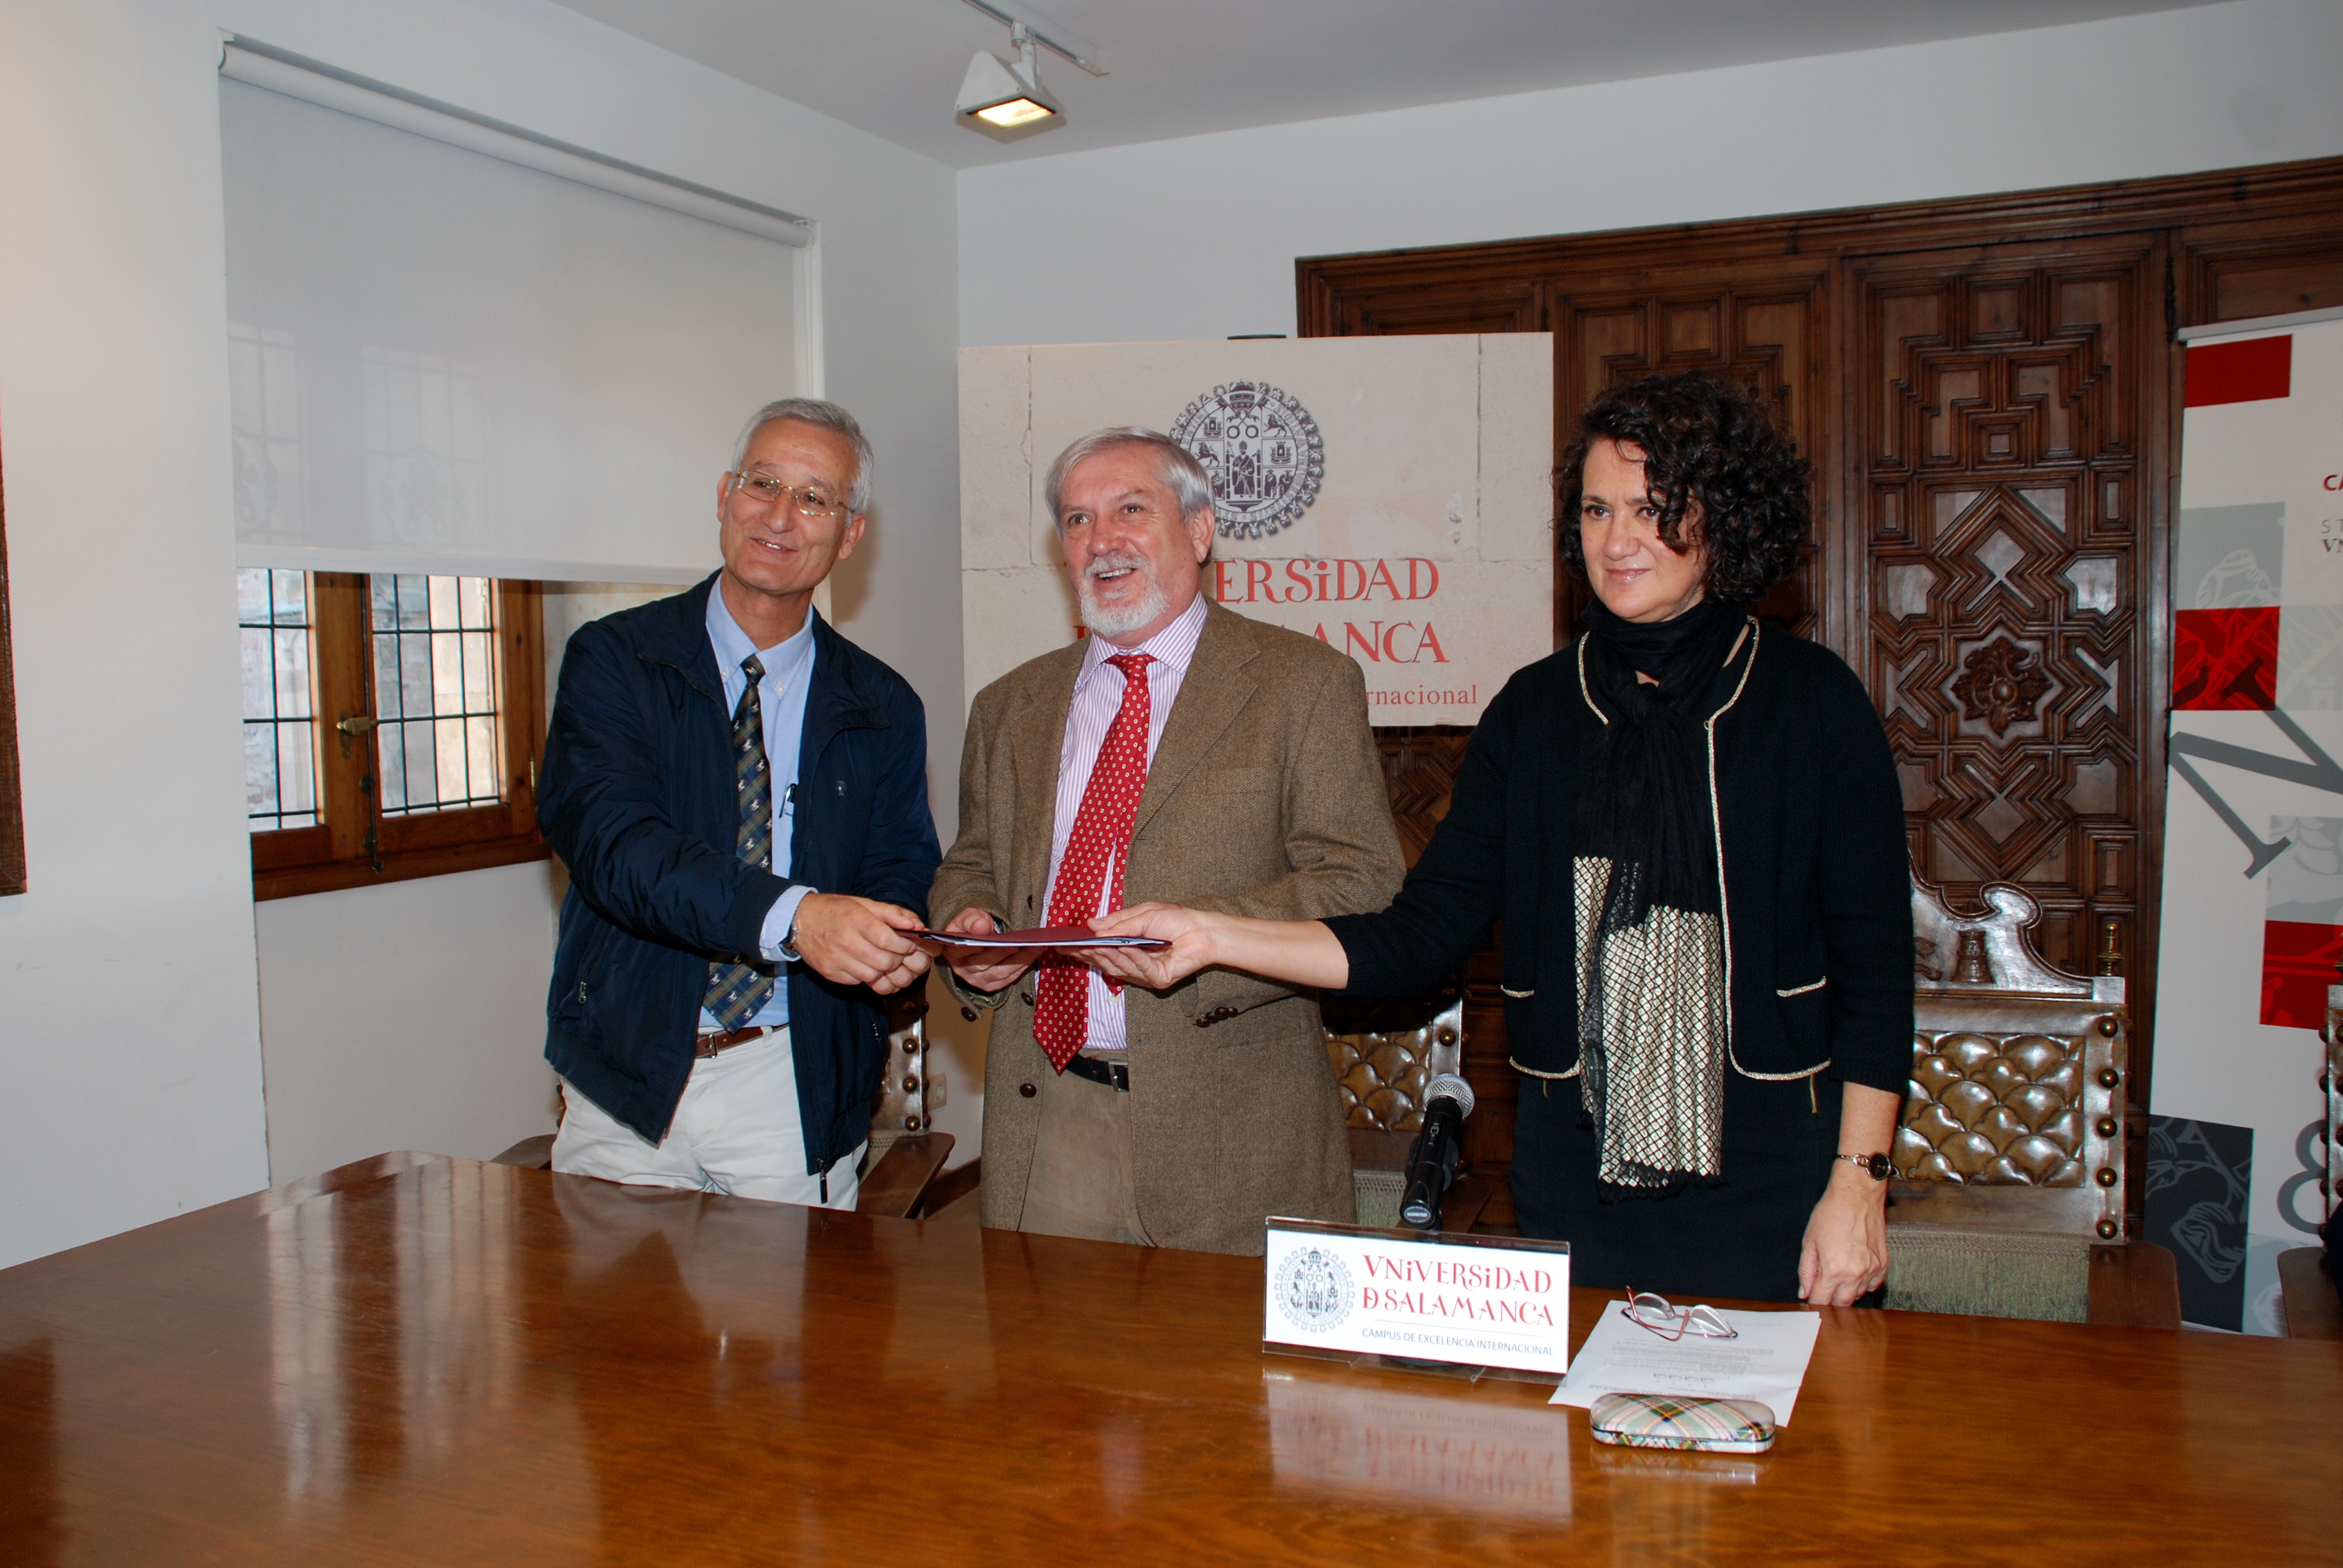 La Universidad de Salamanca, FARPE y FUNDALUCE presentan las XV Jornadas de Investigación ‘Científicos + Pacientes’ y entregan el acta del Premio FUNDALUCE 2012 a Eugenio Santos